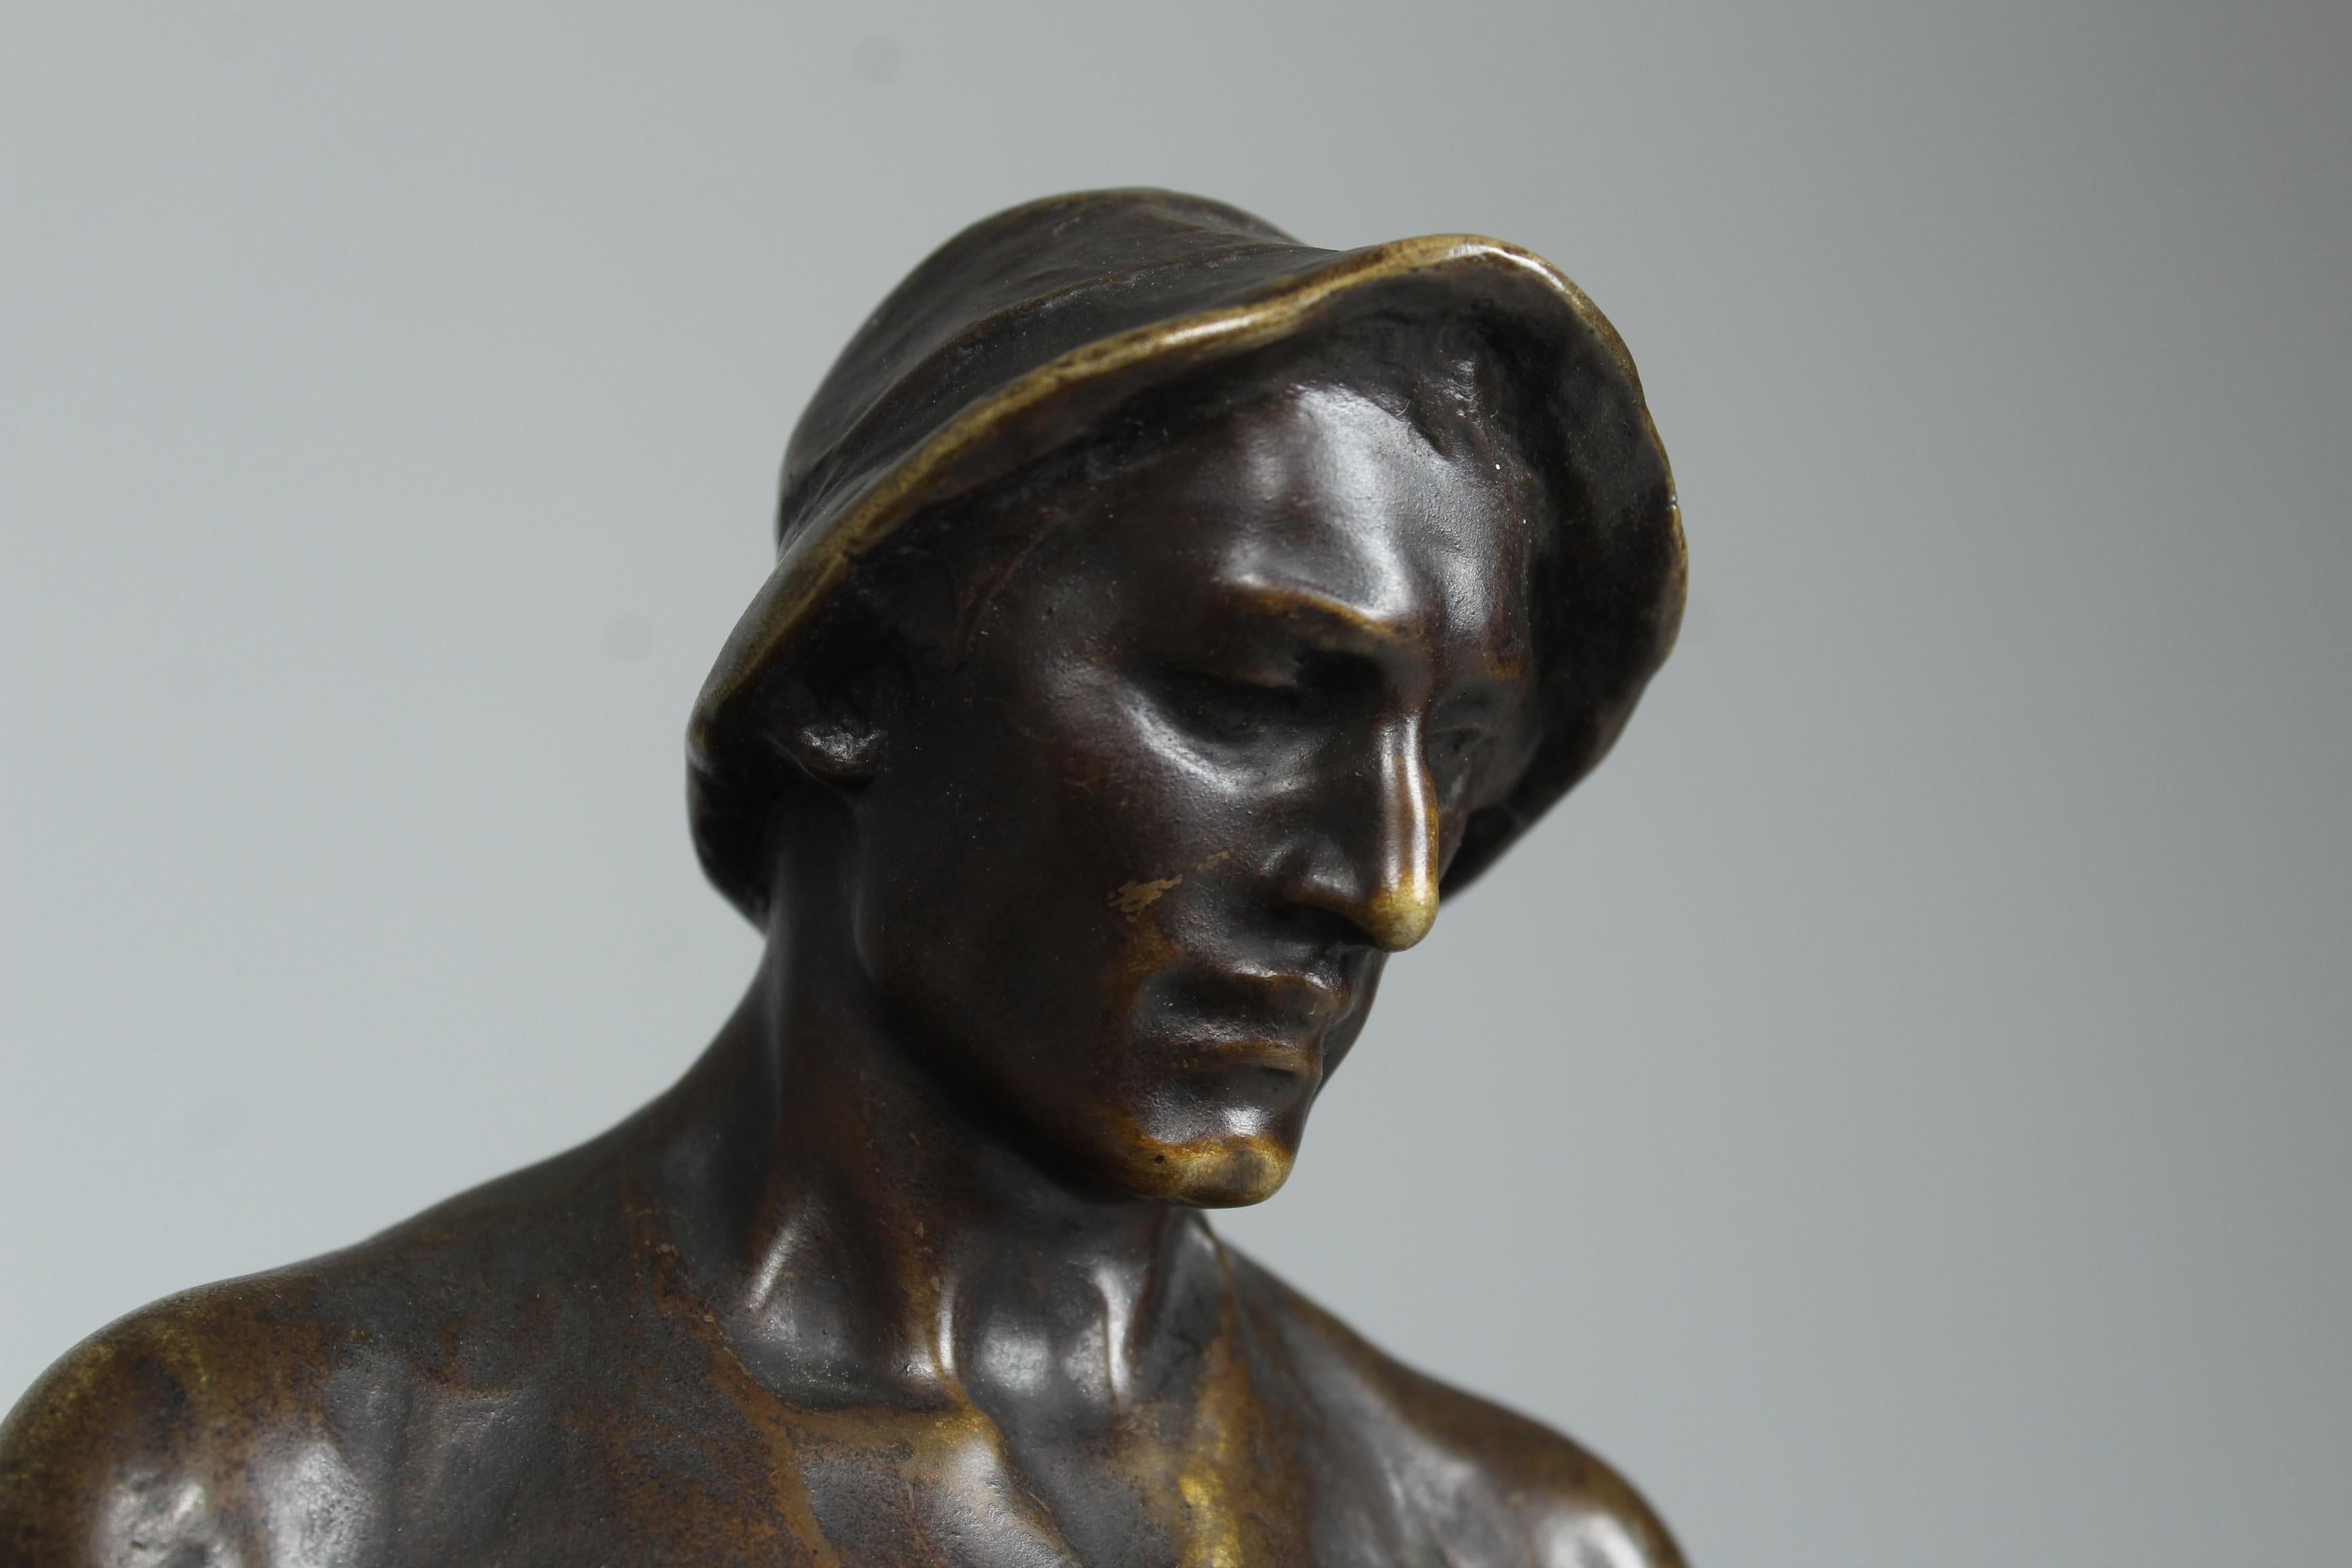 Belle statue en bronze du sculpteur et artiste autrichien Adolf Josef Pohl (né à Vienne).  27 avril 1872 -  25 juillet 1930).
Représentation d'un forgeron debout en tenue de travail typique avec un tablier en cuir et des chaussures en bois.
Le